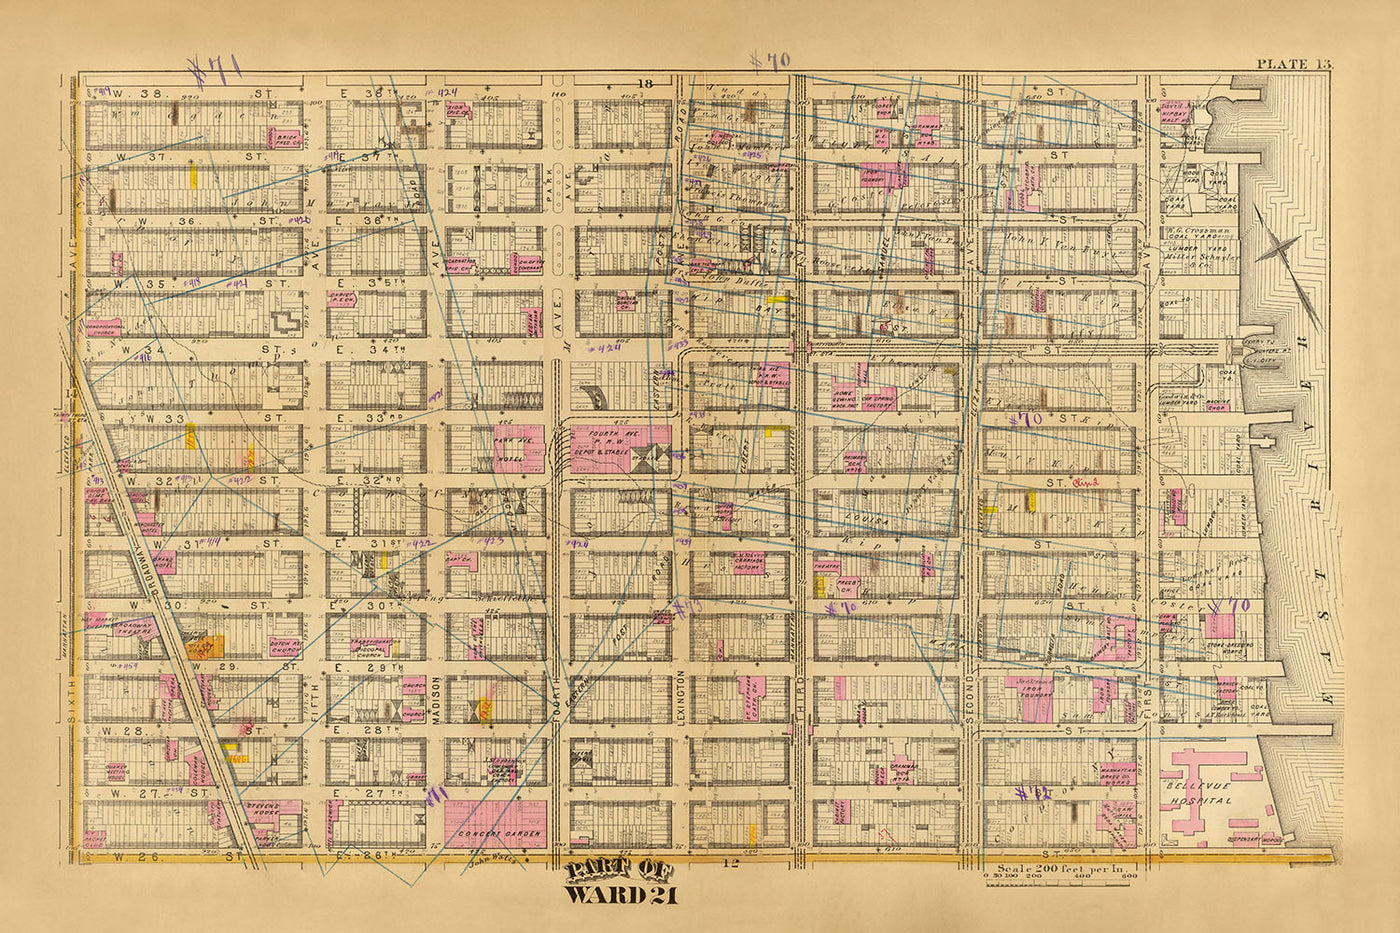 Alte Karte von Ward 21, NYC von Bromley, 1879: Bellevue Hospital, Concert Garden und 33rd Street Station.